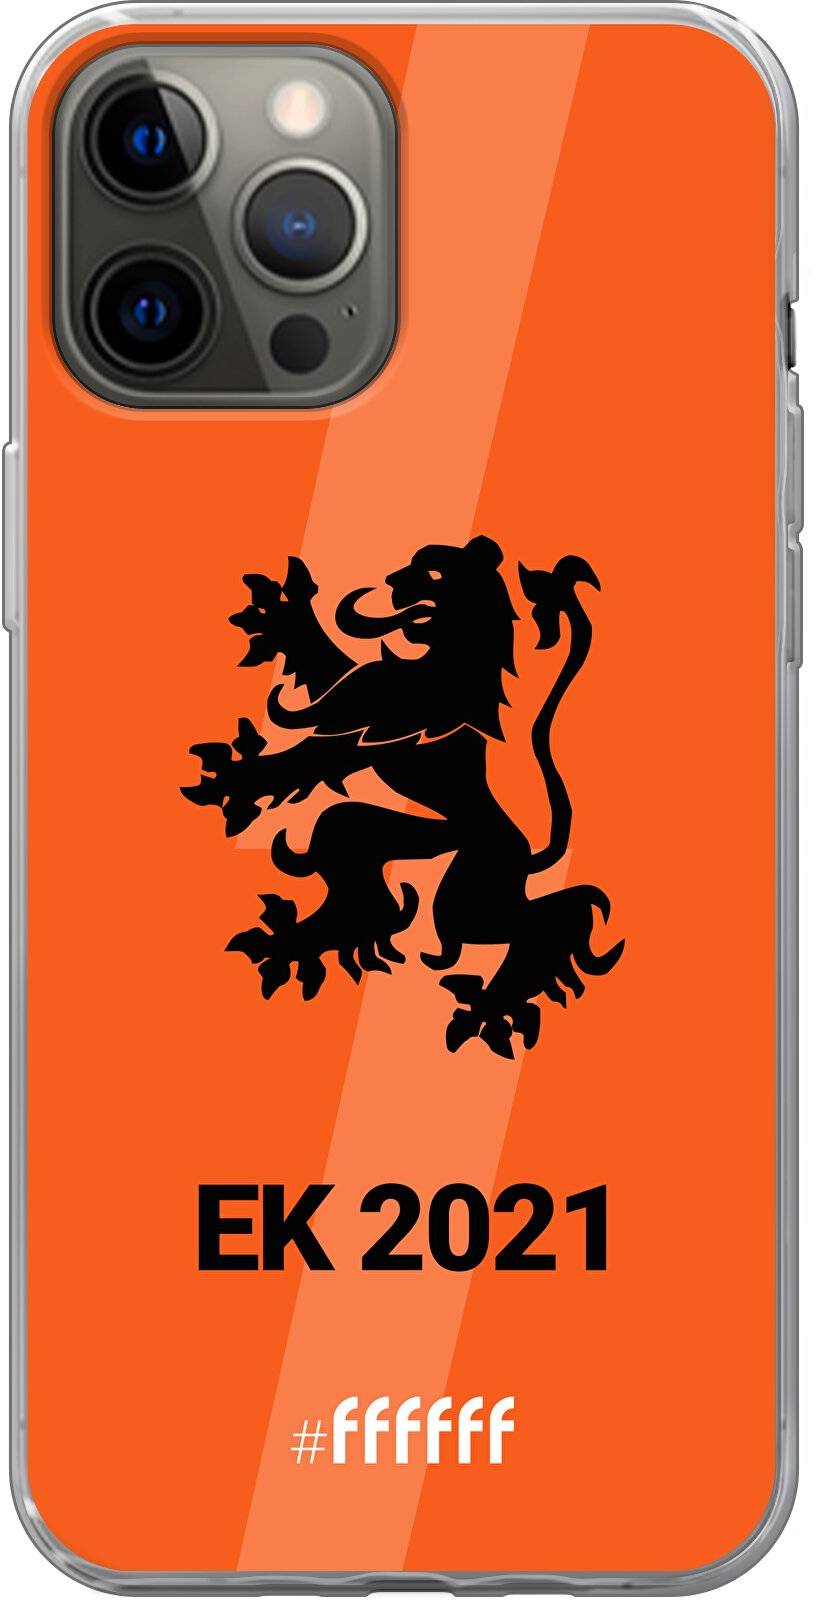 Nederlands Elftal - EK 2021 iPhone 12 Pro Max